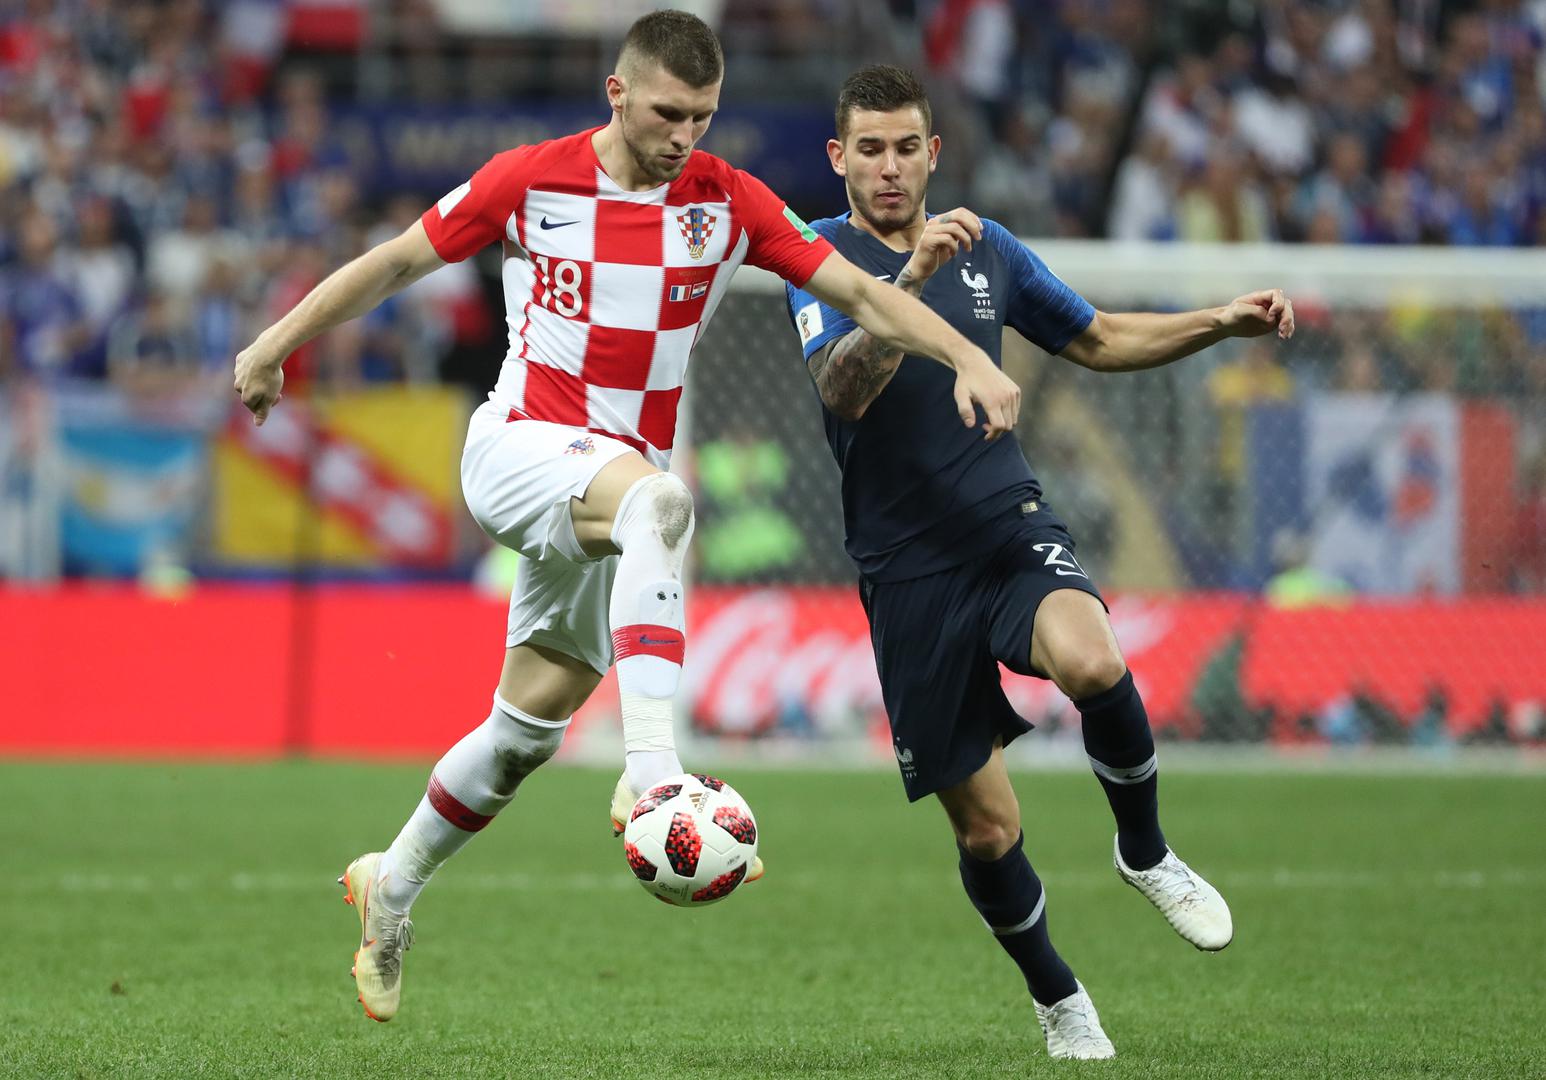 Hrvatski navijači priredili su sjajnu atmosferu na stadionu Lužnjiki, no nažalost 'slavlje Vatrenih' pokvarili su francuski nogometaši koji su razbili hrvatske snove o svjetskom naslovu.

